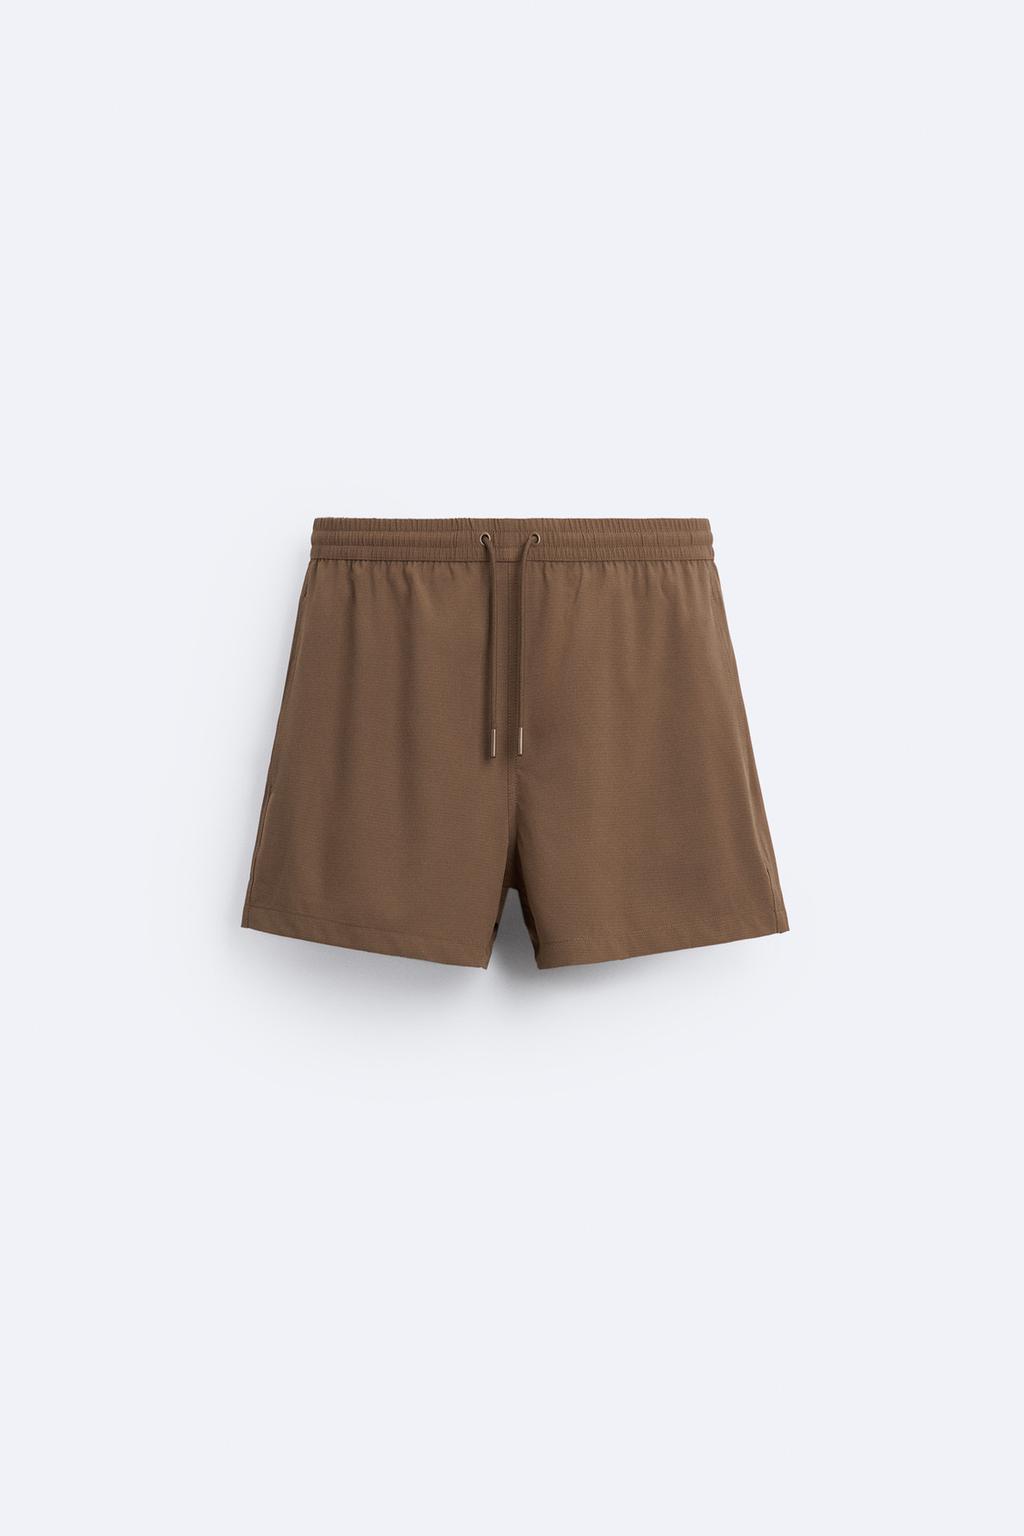 Базовые плавки ZARA, коричневый базовые брюки из мягкой ткани zara коричневый